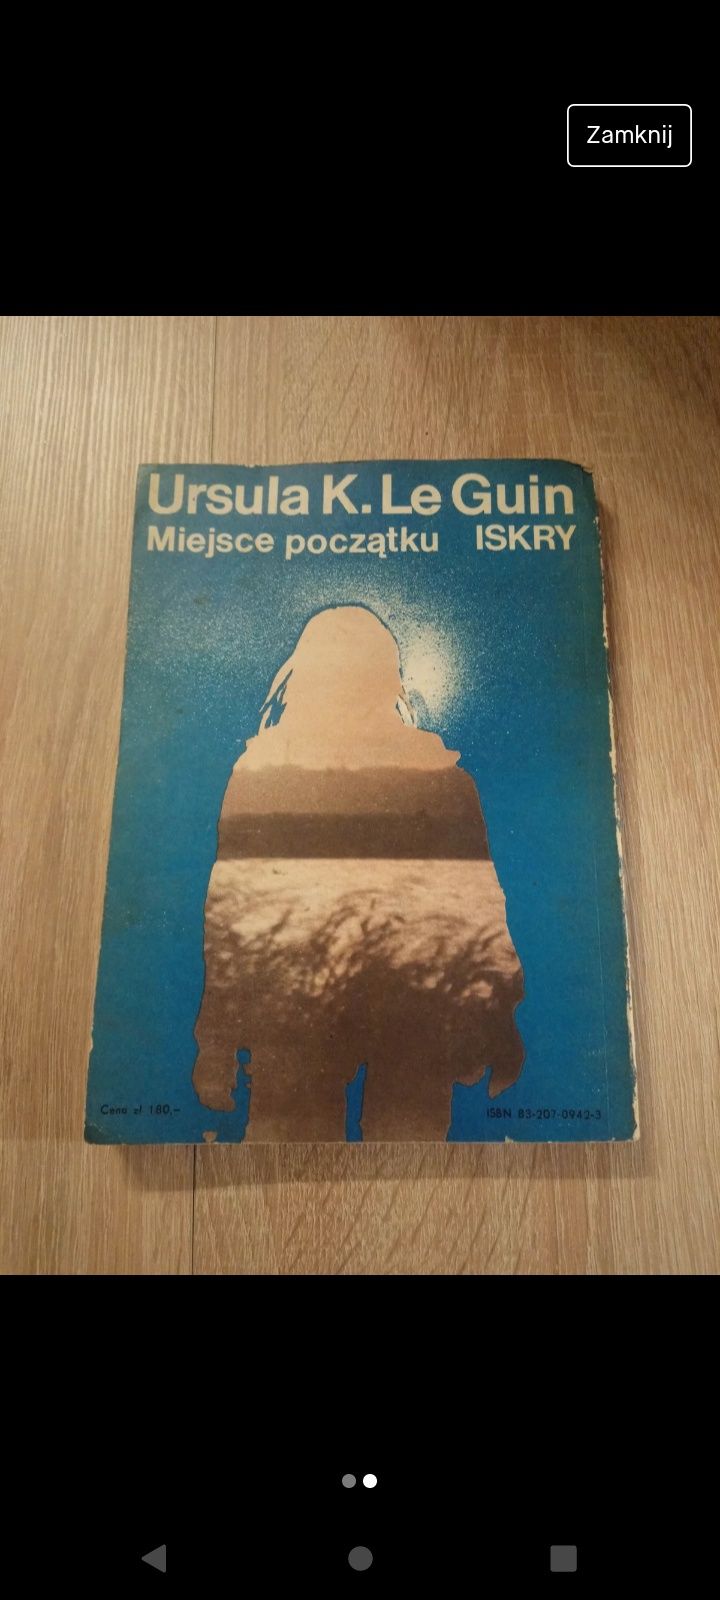 Ursula K. Le Guin - "Miejsce początku" 

Wydawnictwo Iskry, Warszawa 1